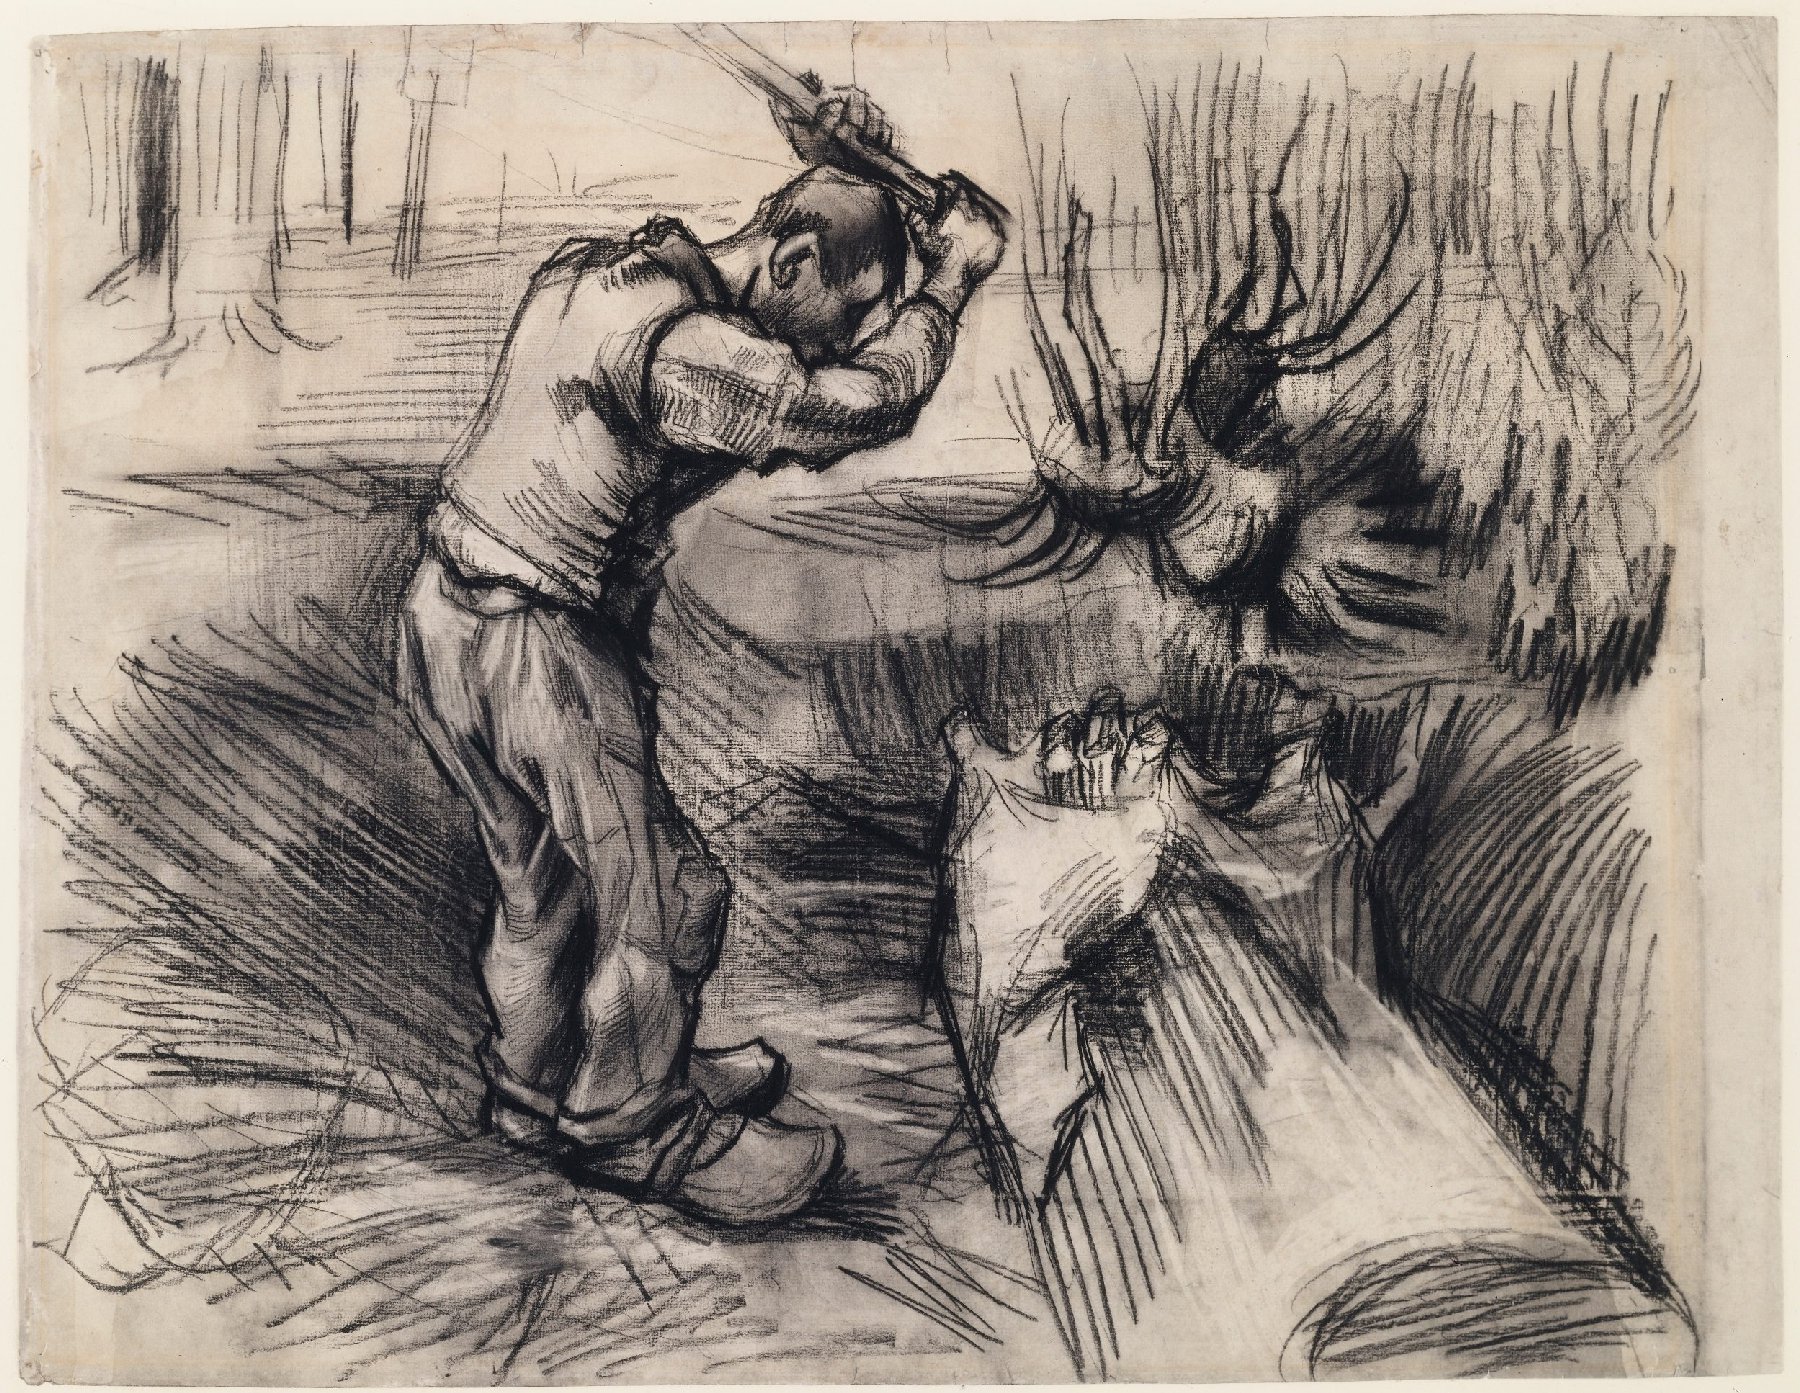 Houthakker Vincent van Gogh (1853 - 1890), Nuenen, juli-september 1885